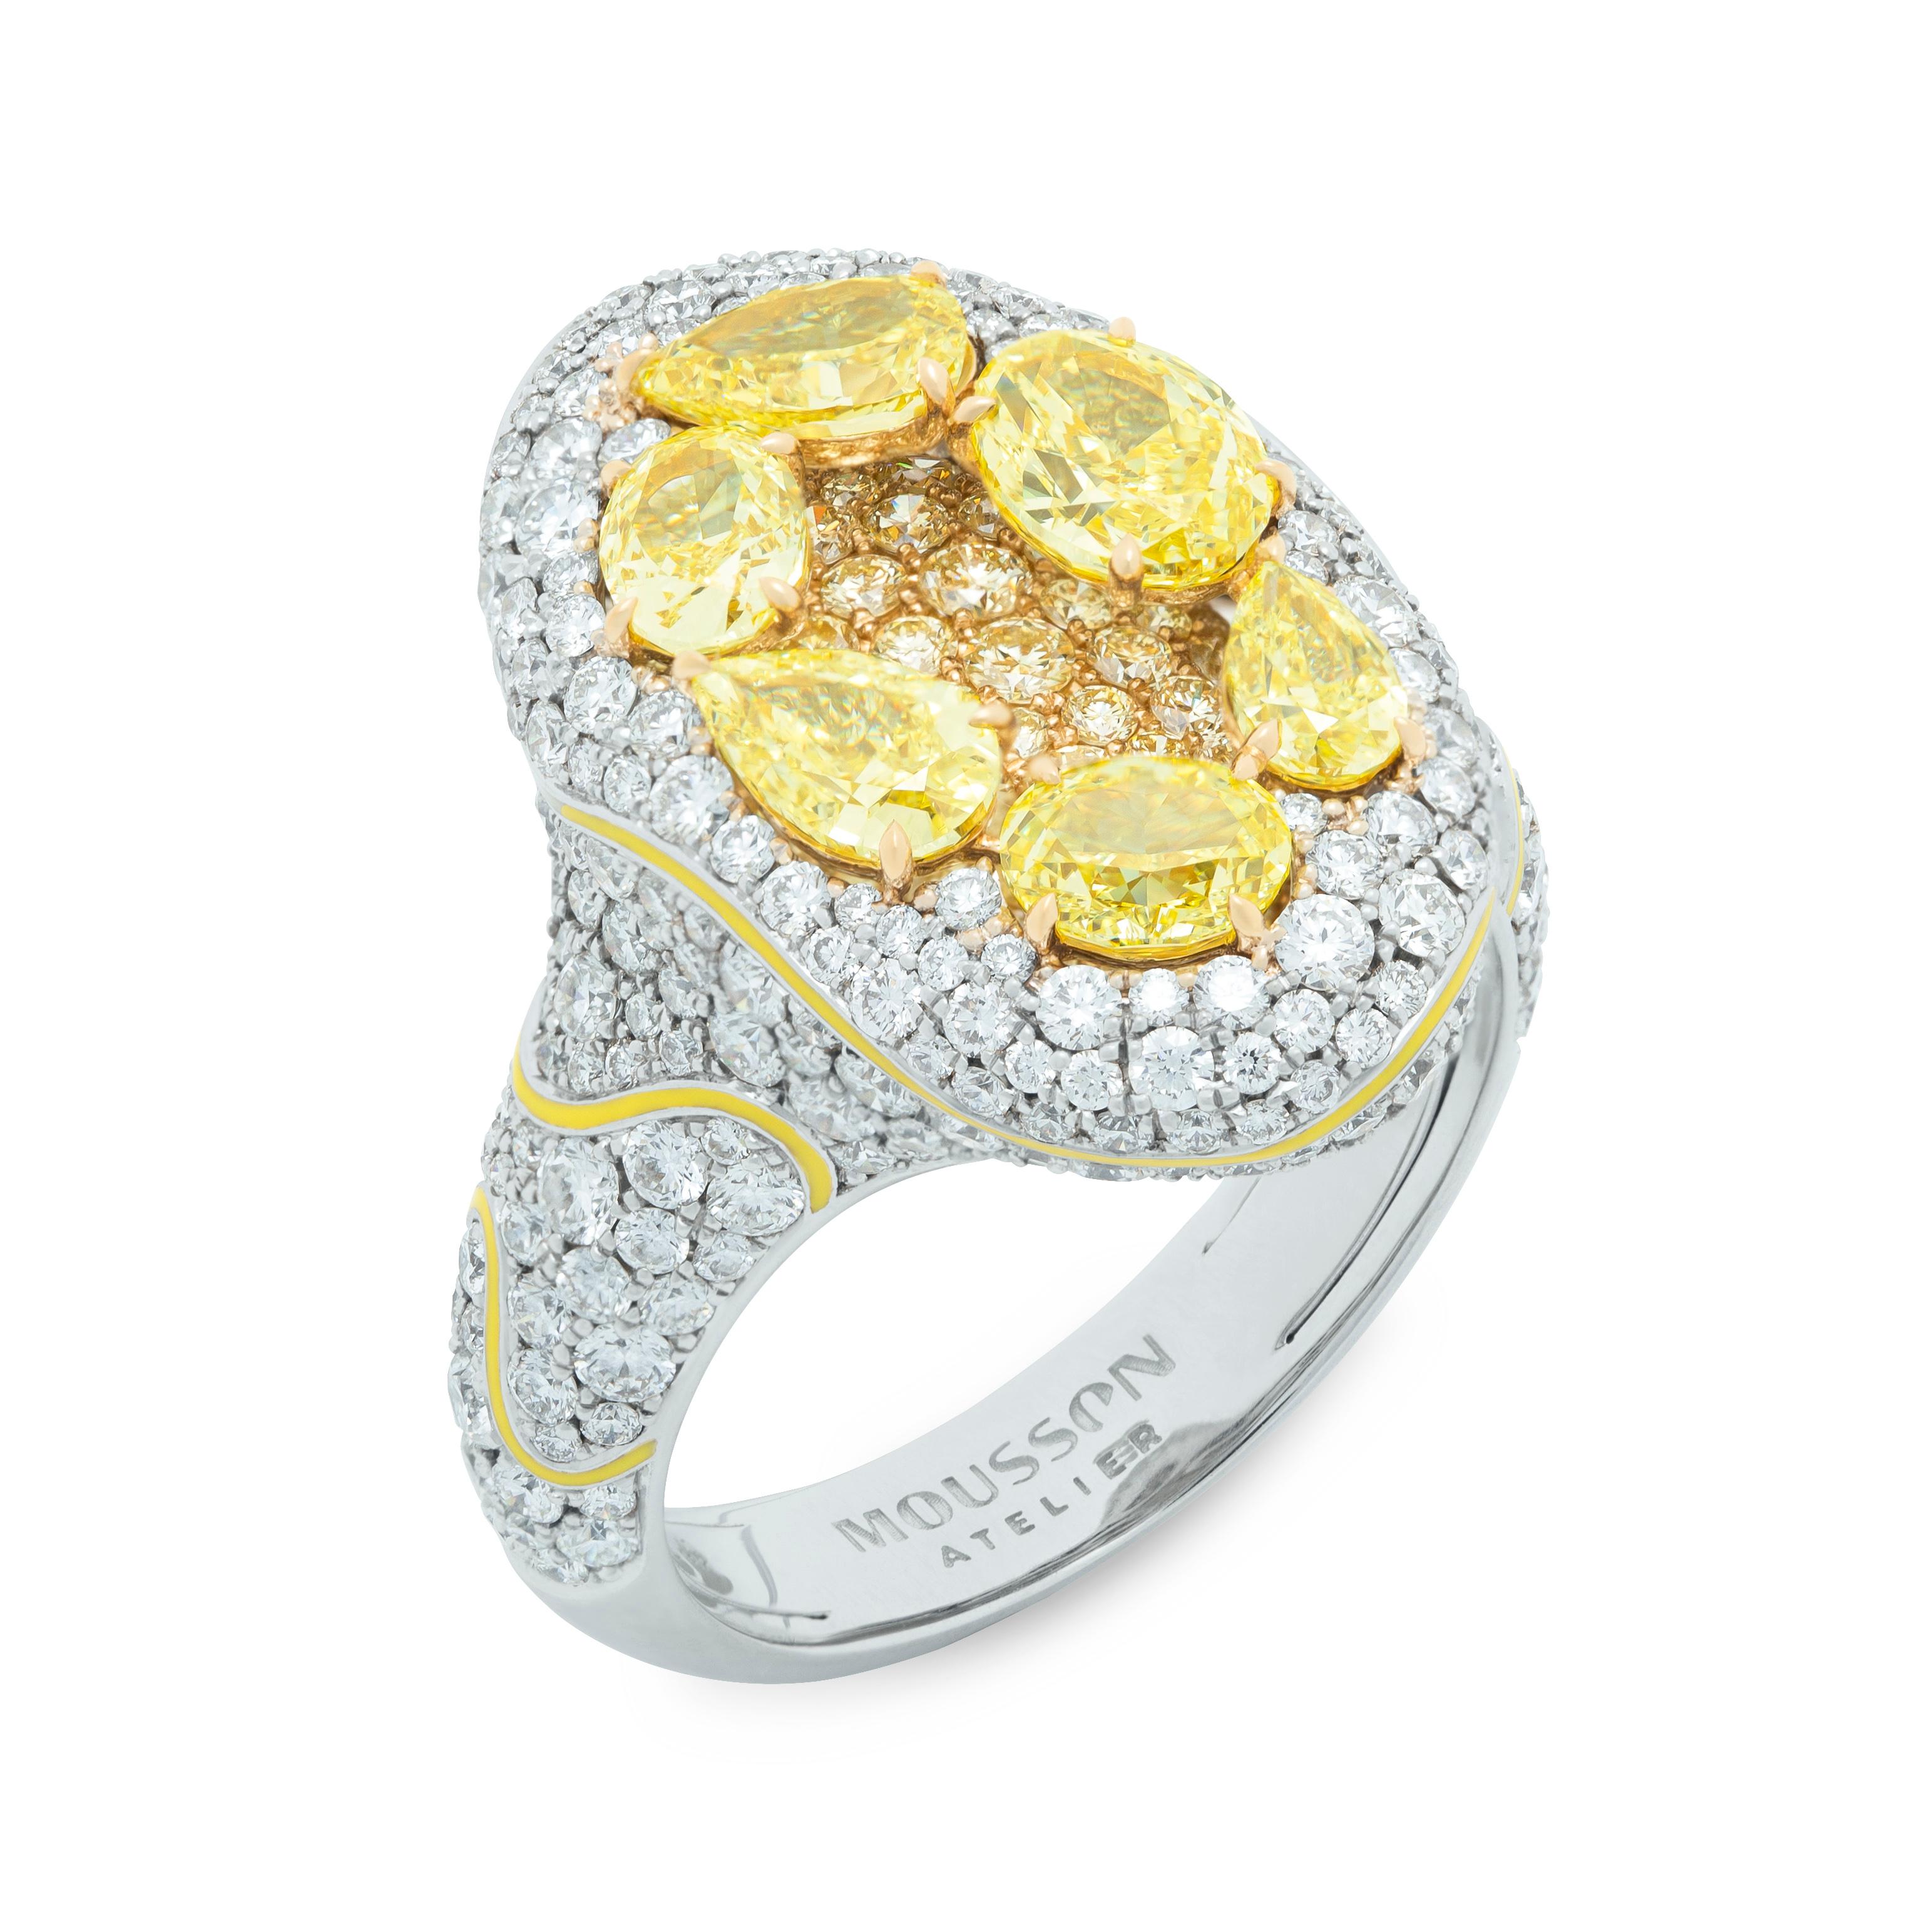 Gelbe Diamanten Weiße Diamanten und weiße Diamanten Emaille 18 Karat Weißgold High Jewellry Suite

Diese Suite aus 18 Karat Weißgold, Emaille, gelben Diamanten und Diamanten ist eine atemberaubende Ergänzung für jede Schmucksammlung. Die zentralen